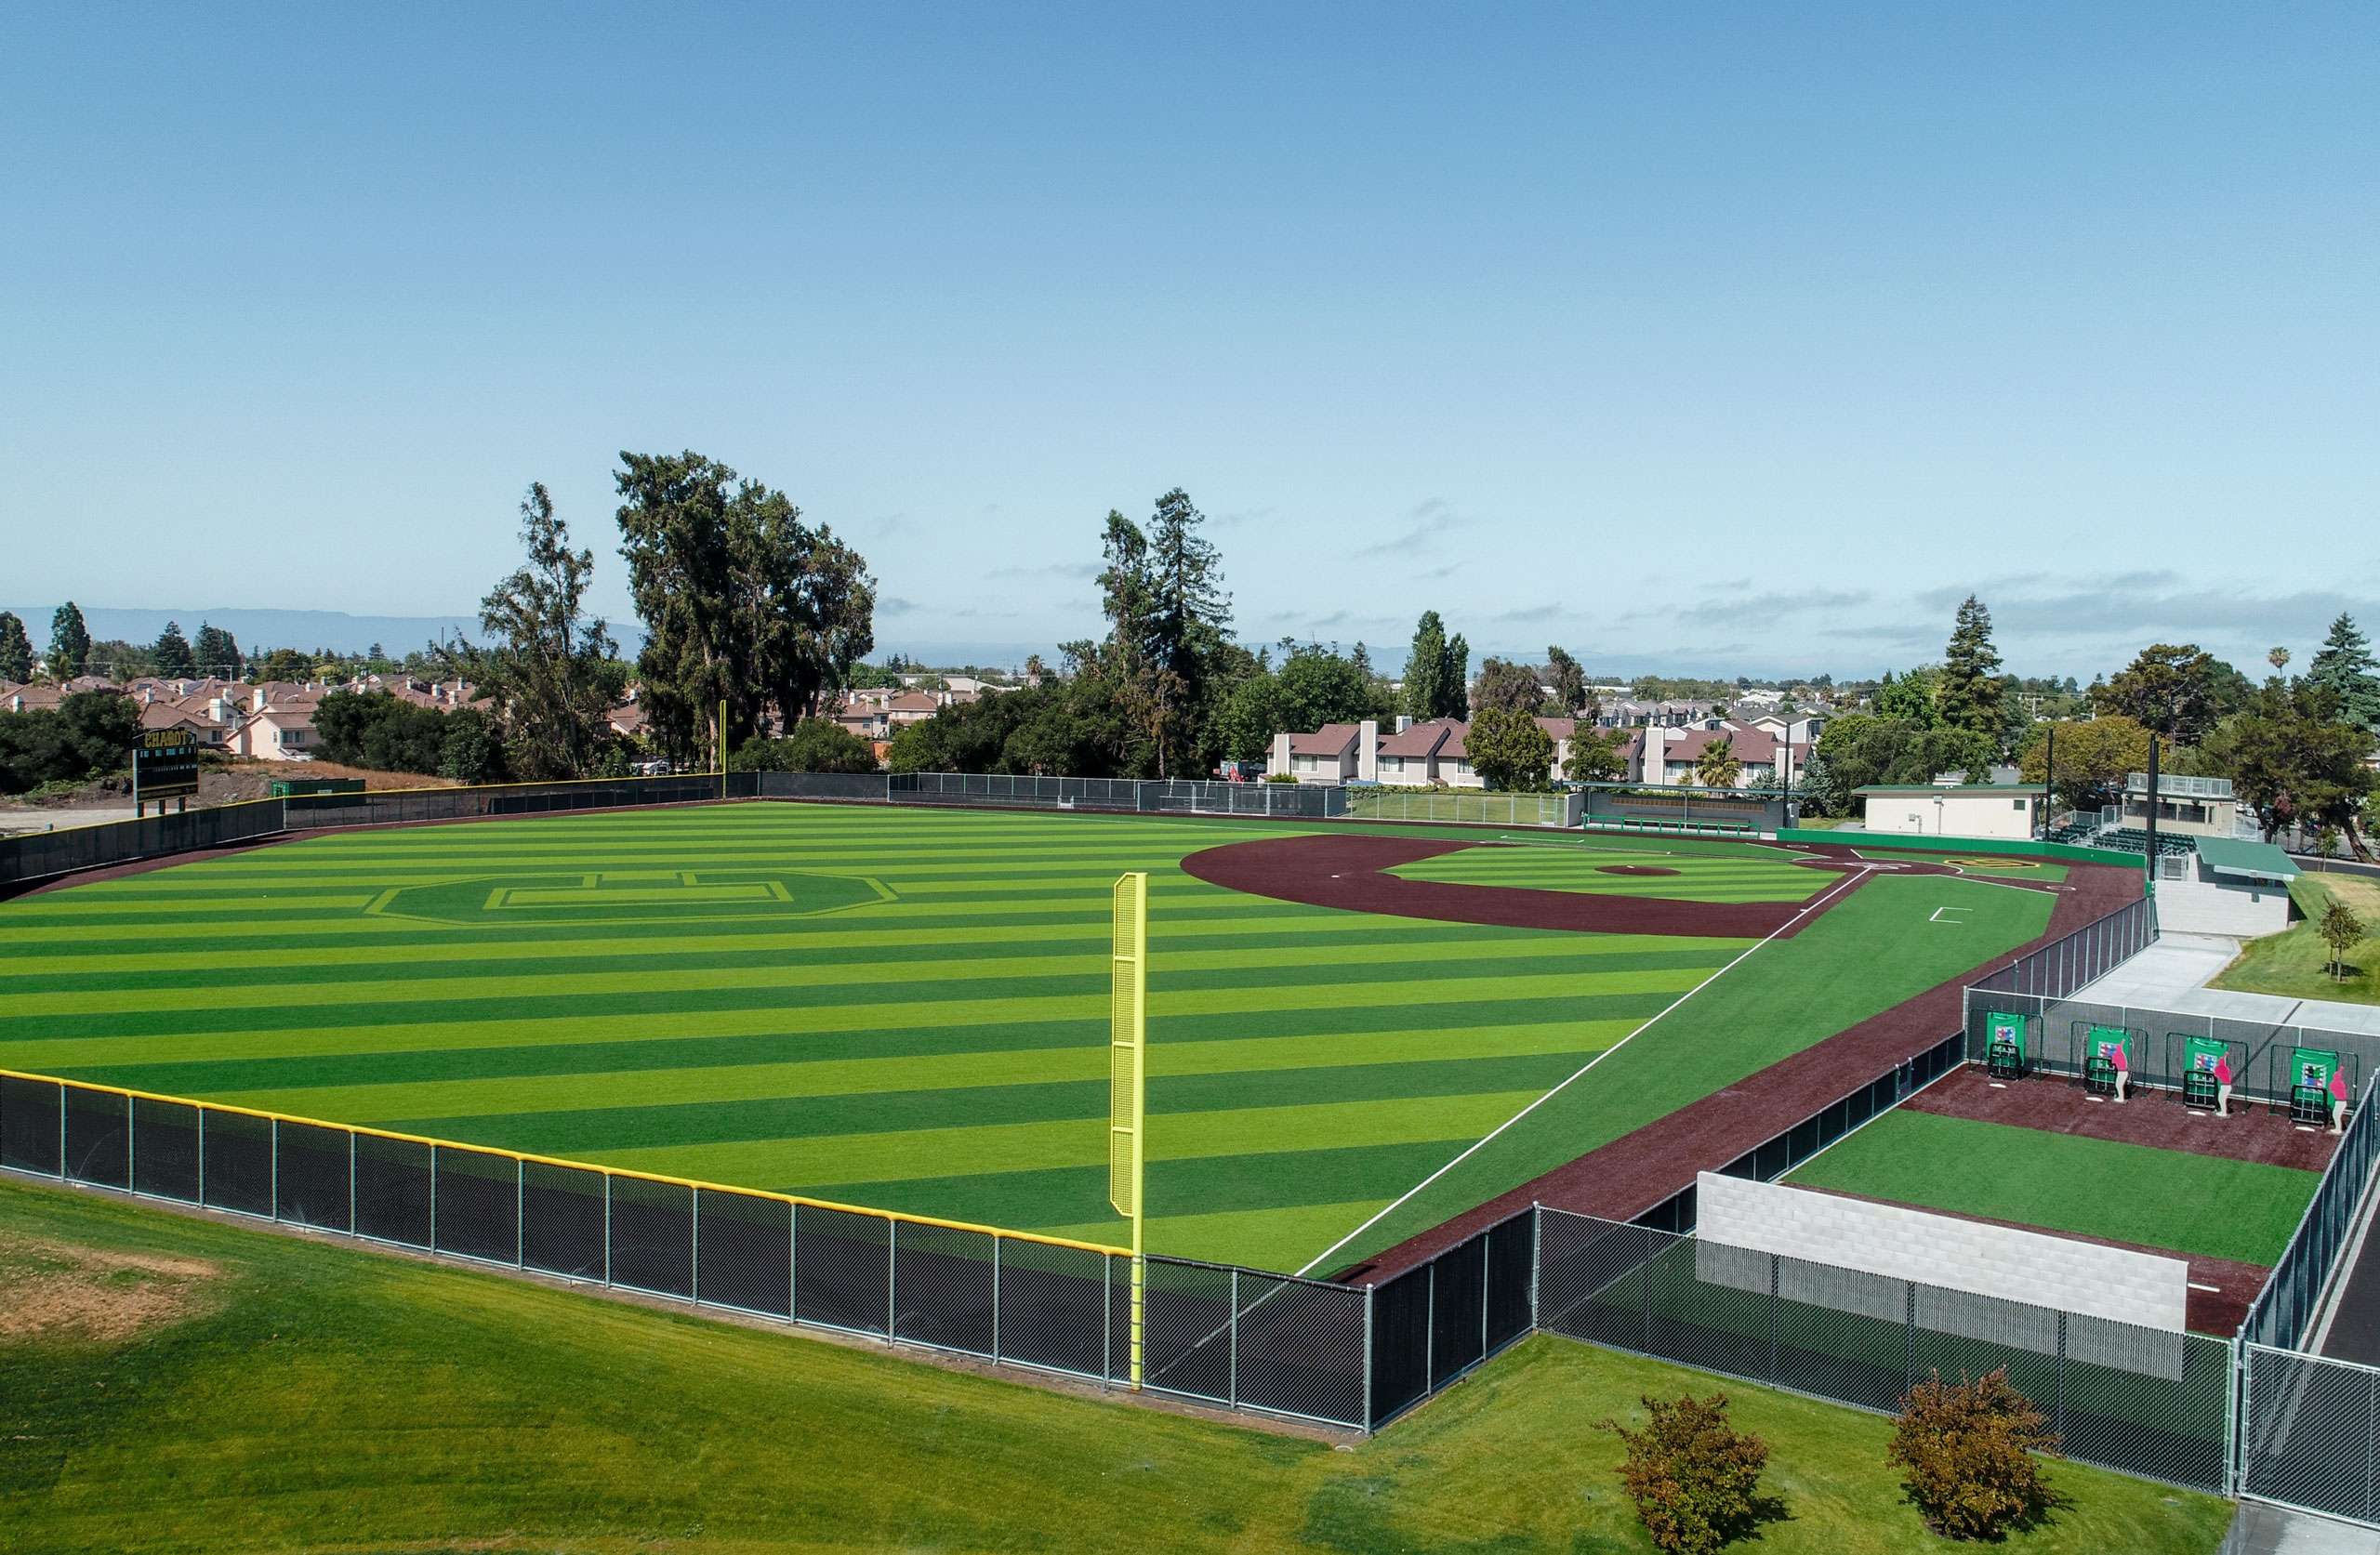 Chabot Community College Baseball Field